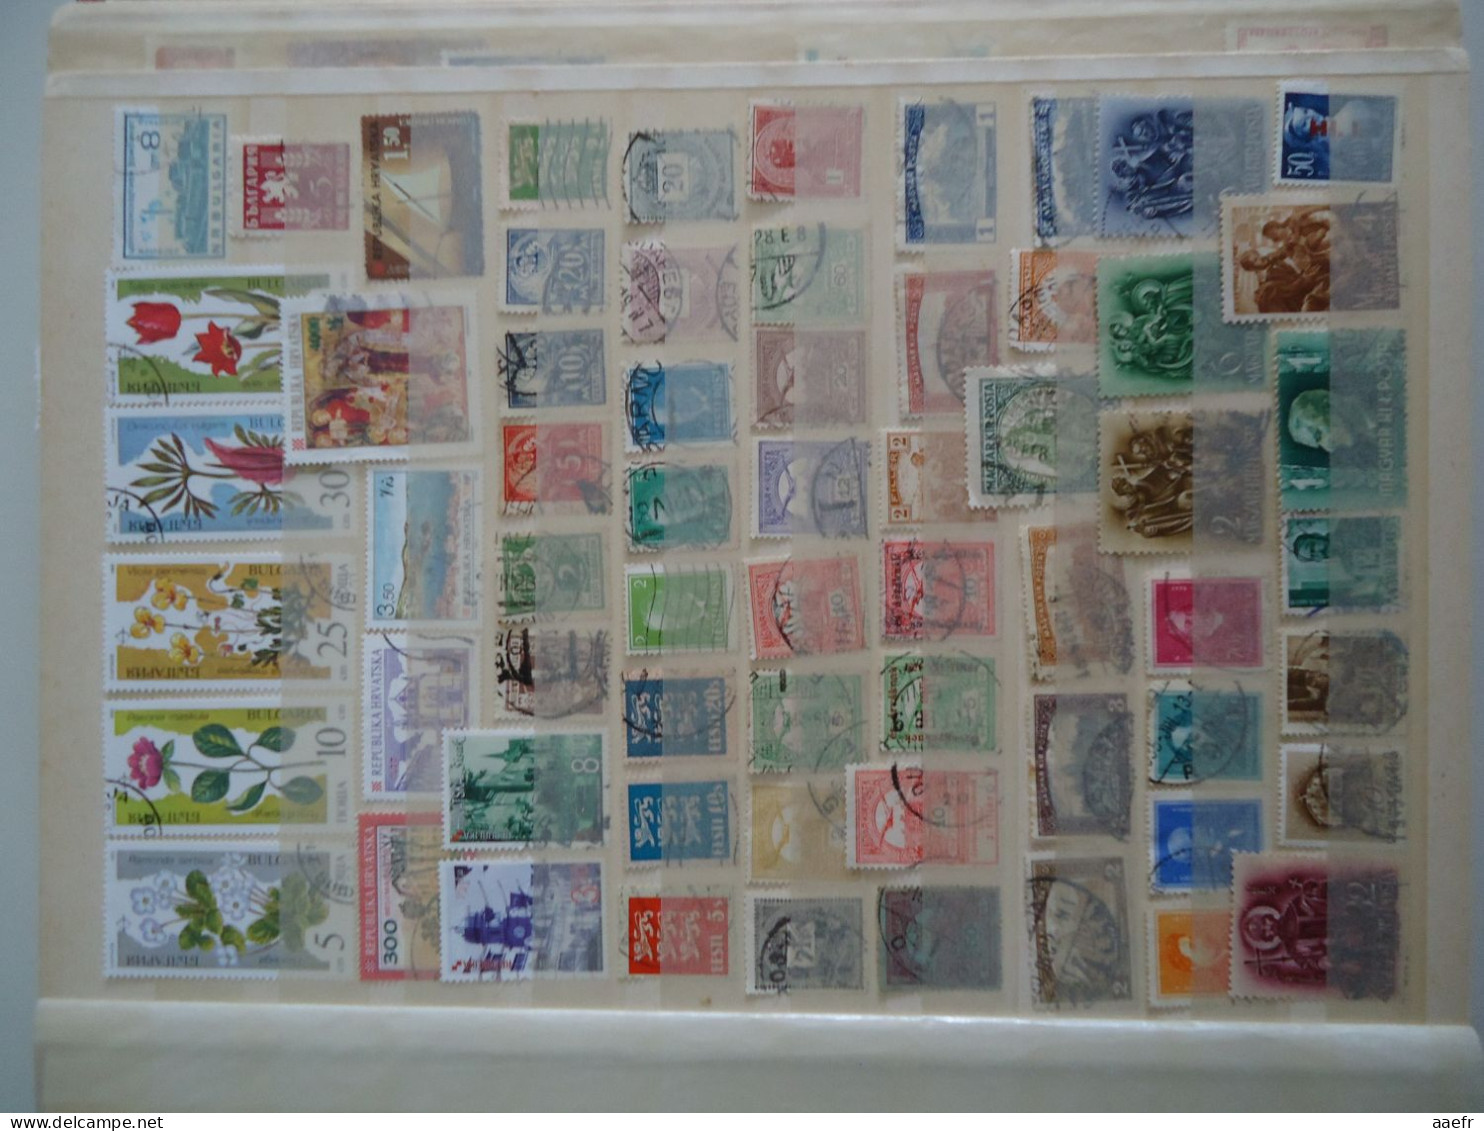 Europe de l' Est - Collection de 1600 timbres différents - 68 MNH - 30 séries complètes - d'Albanie à Yougoslavie